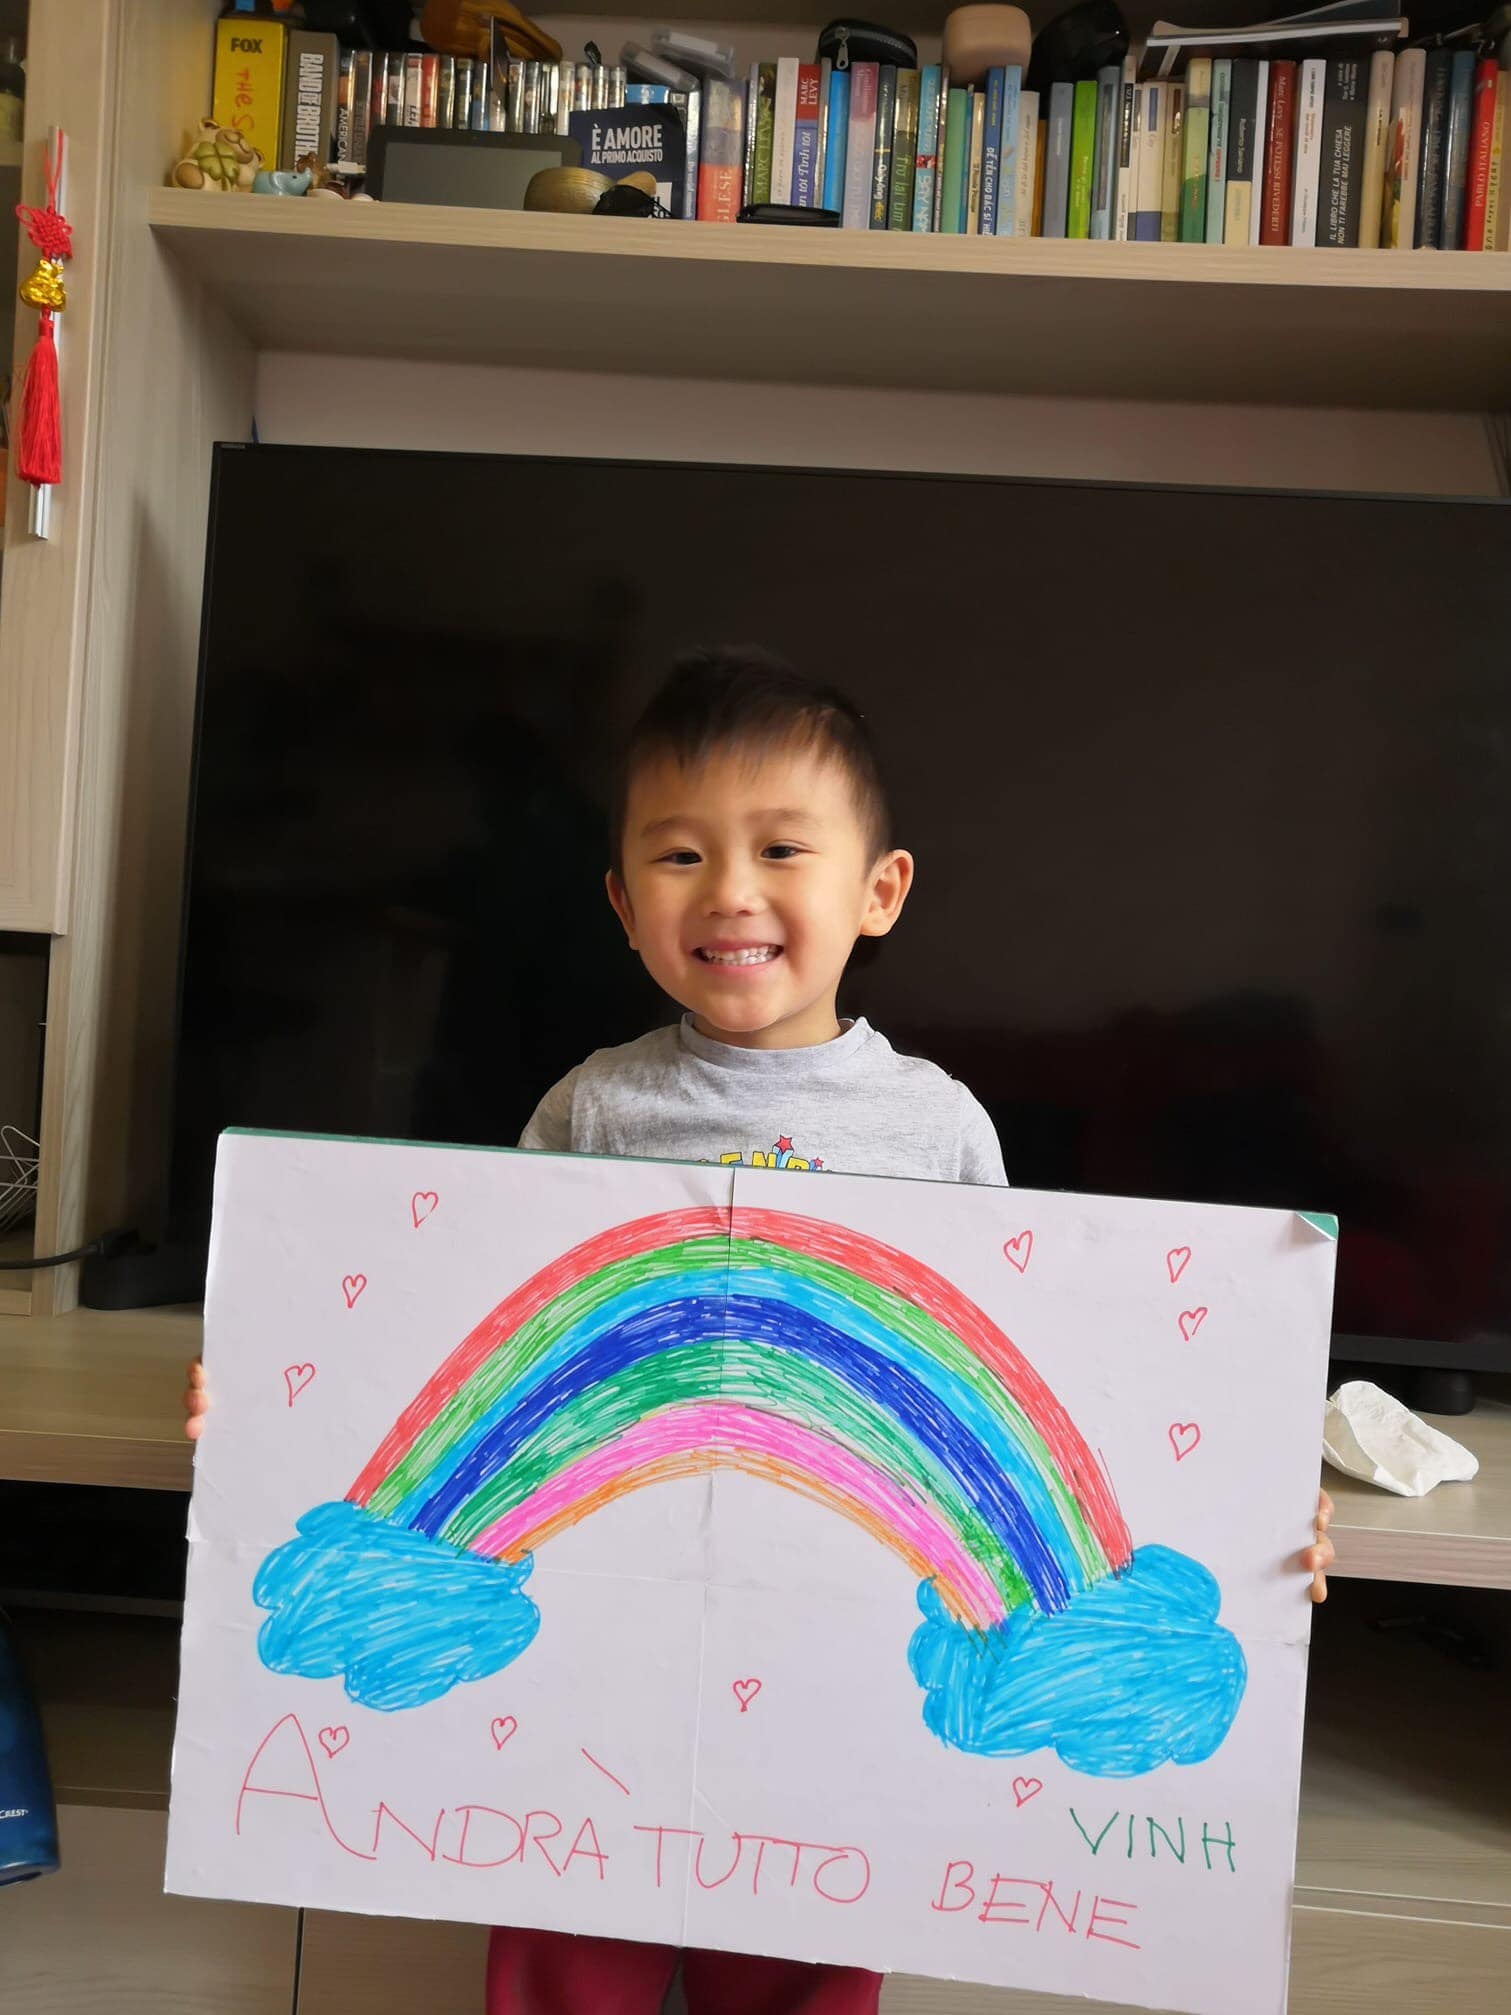 Vẽ và Tô Màu  Vẽ Cầu Vồng  Drawing and Coloring Rainbow for Kids  YouTube